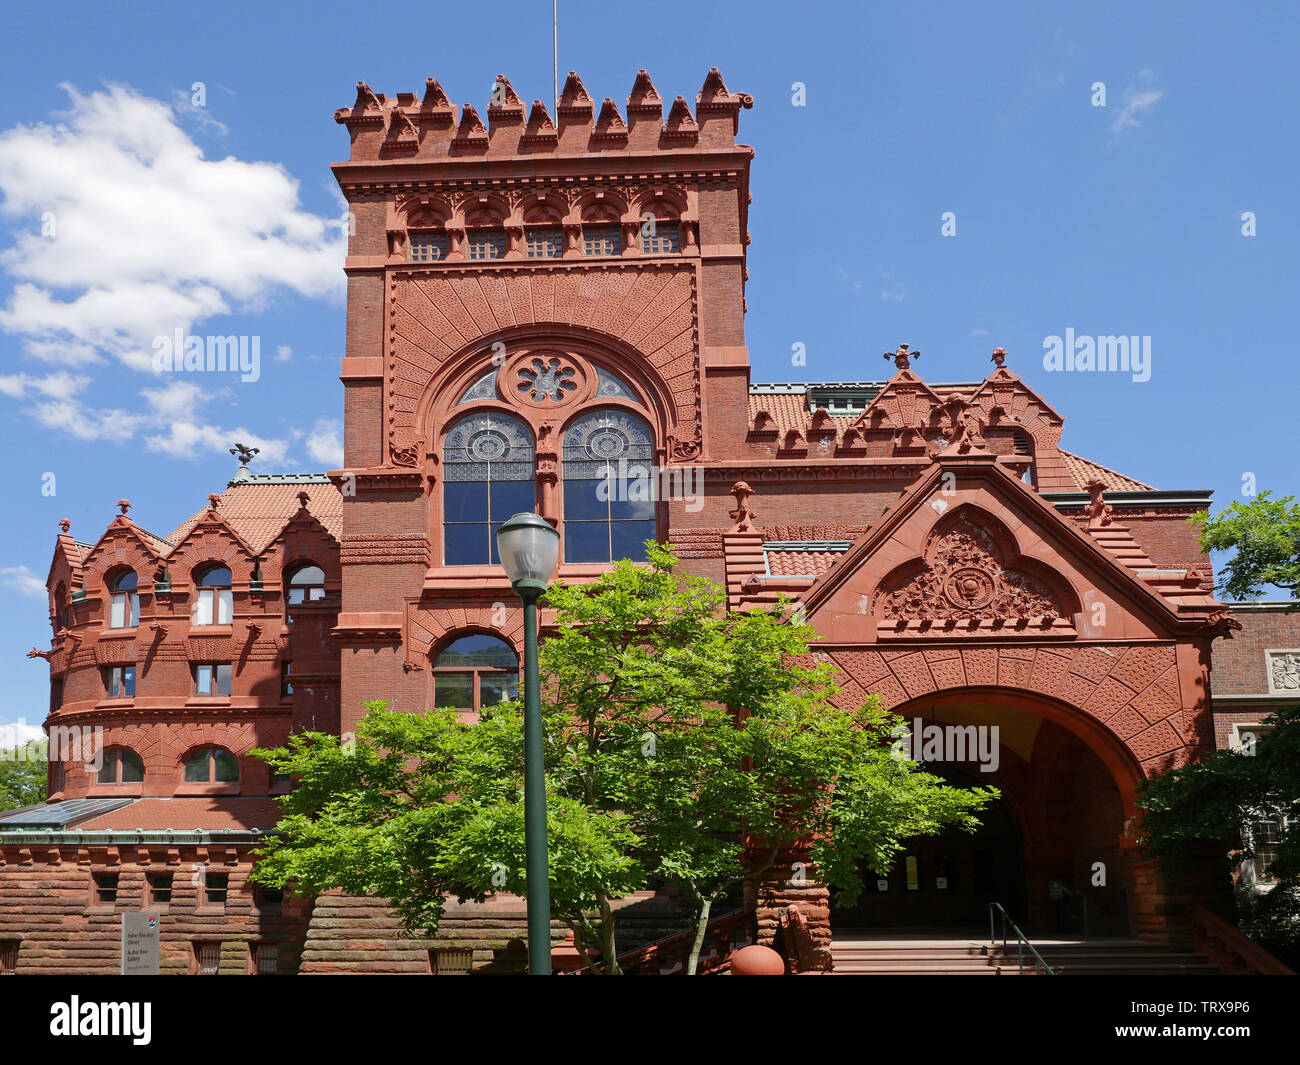 PHILADELPHIA - Mai 2019 : l'Fisher Fine Arts Library de l'Université de Pennsylvanie, construit en 1890, est un monument historique national. Banque D'Images